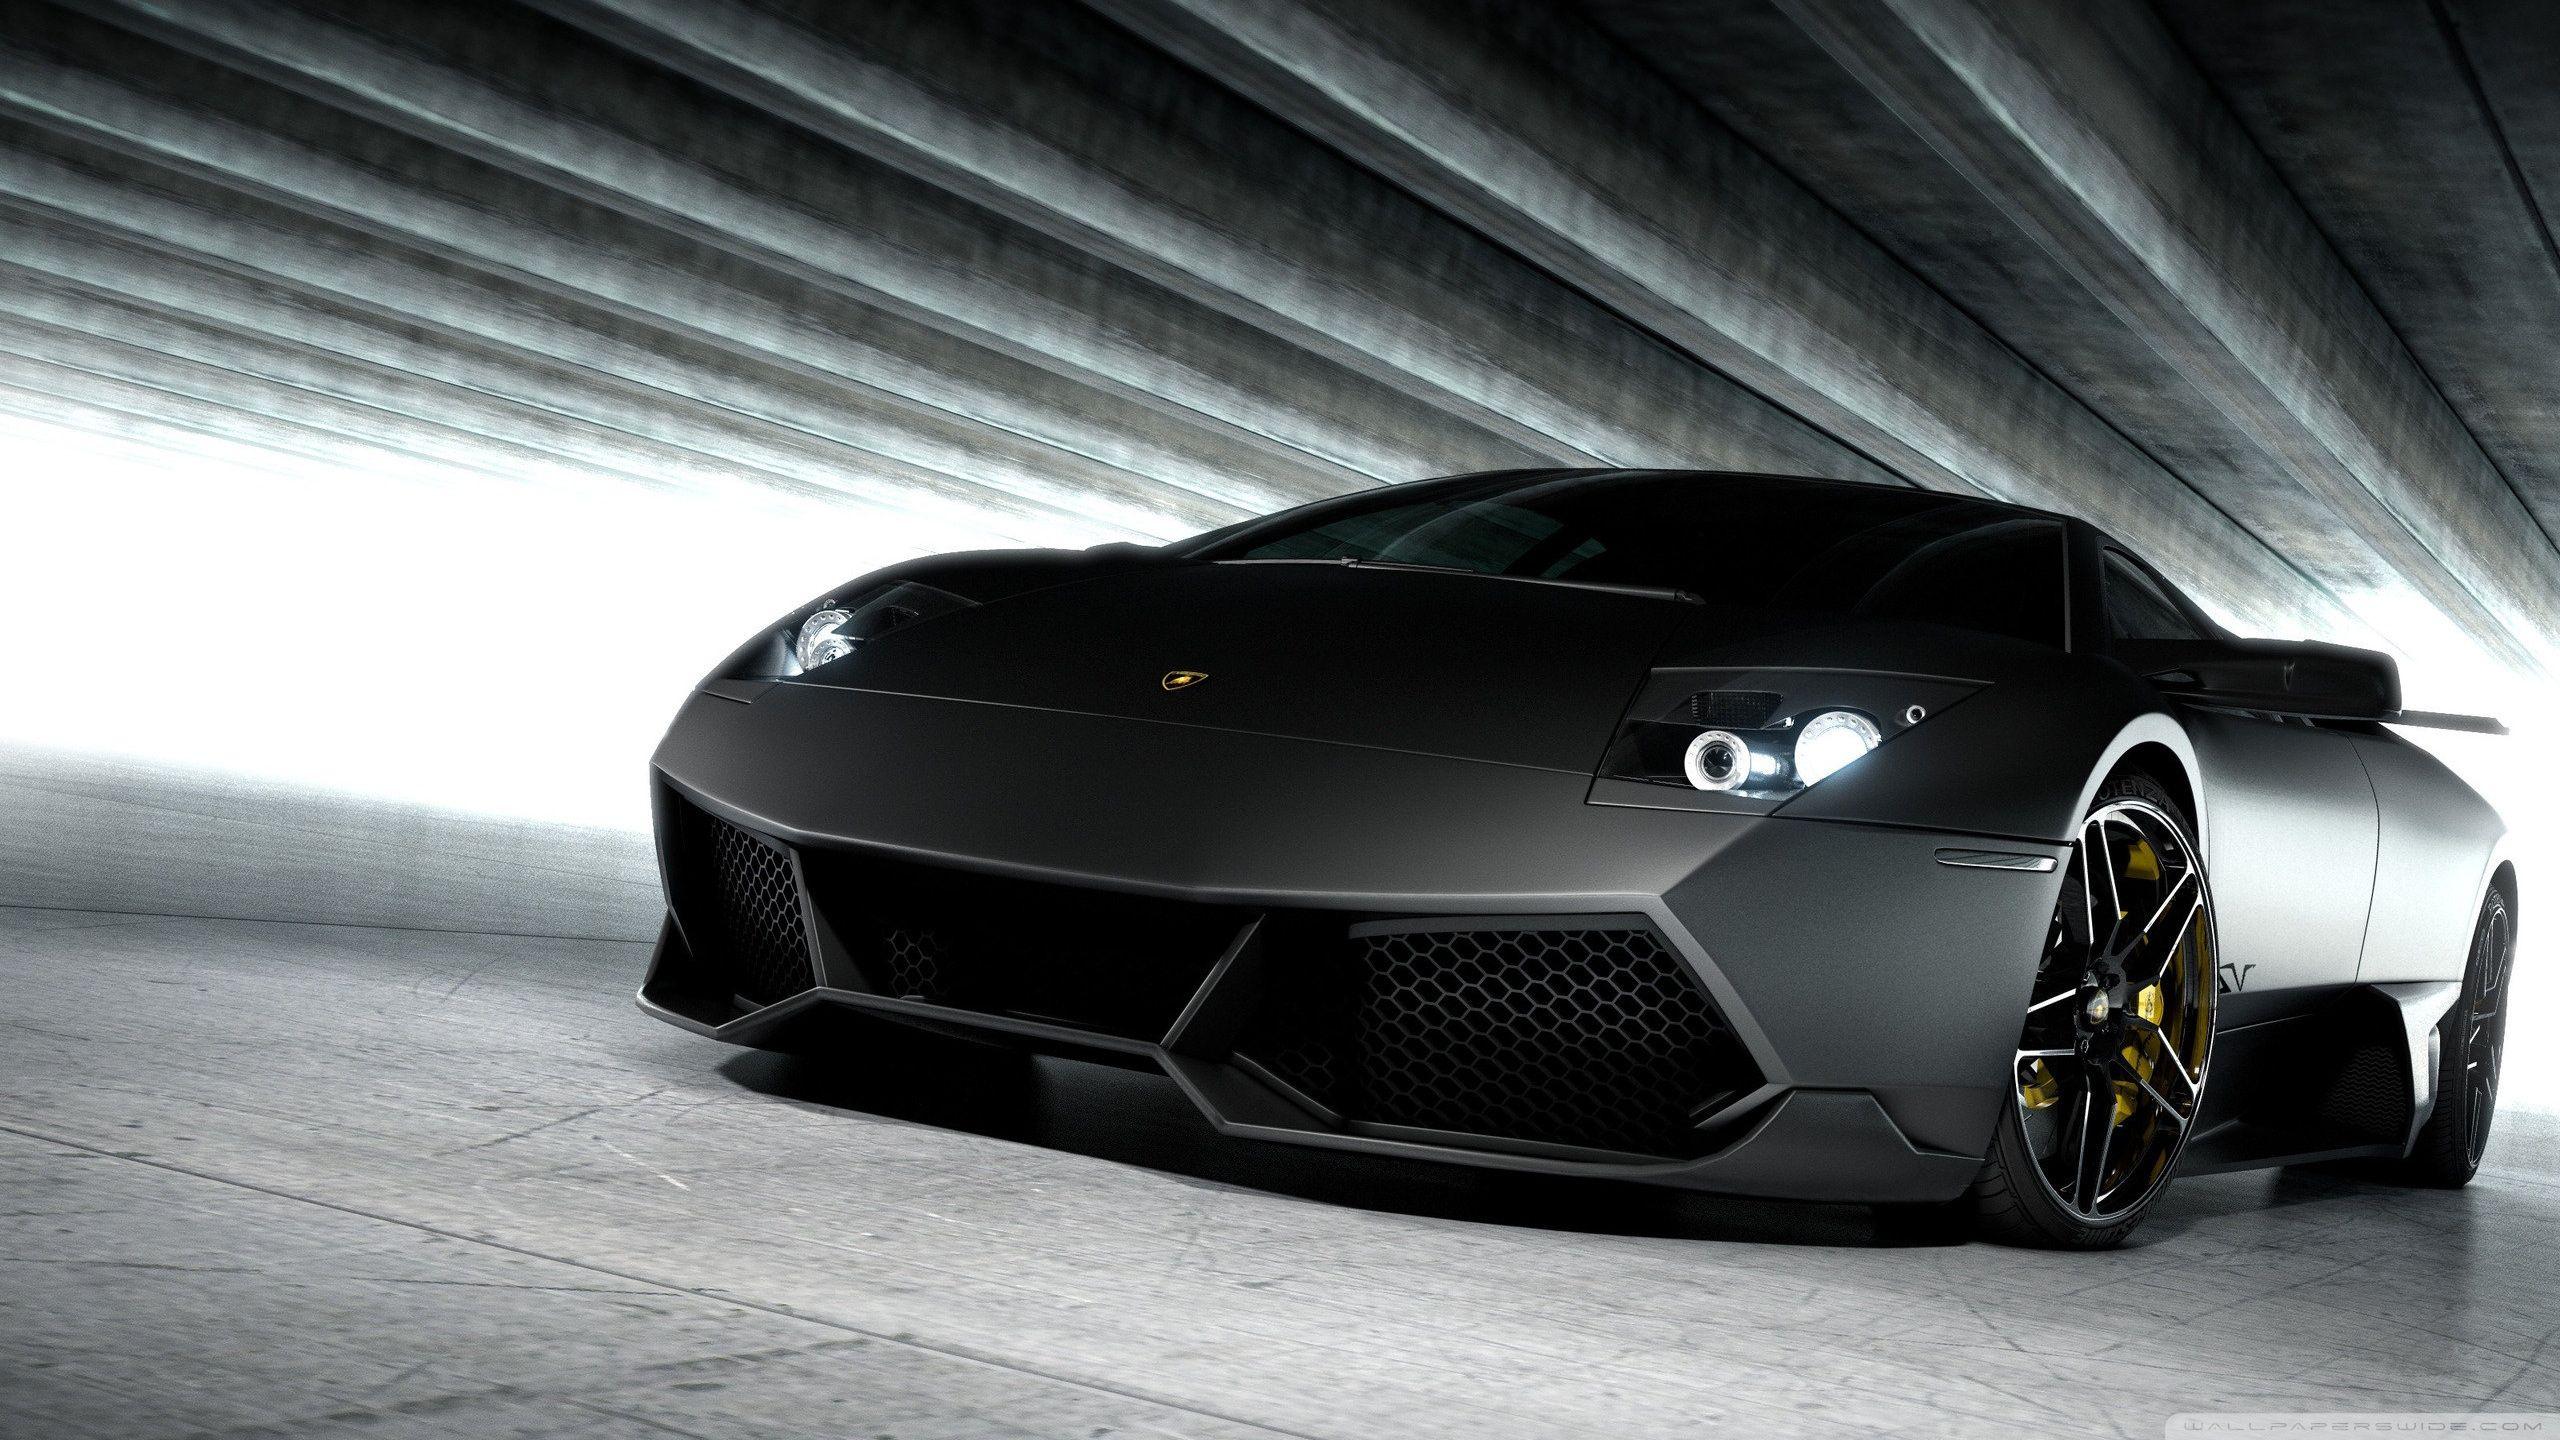 Black Lamborghini Image HD For Desktop Wallpaper